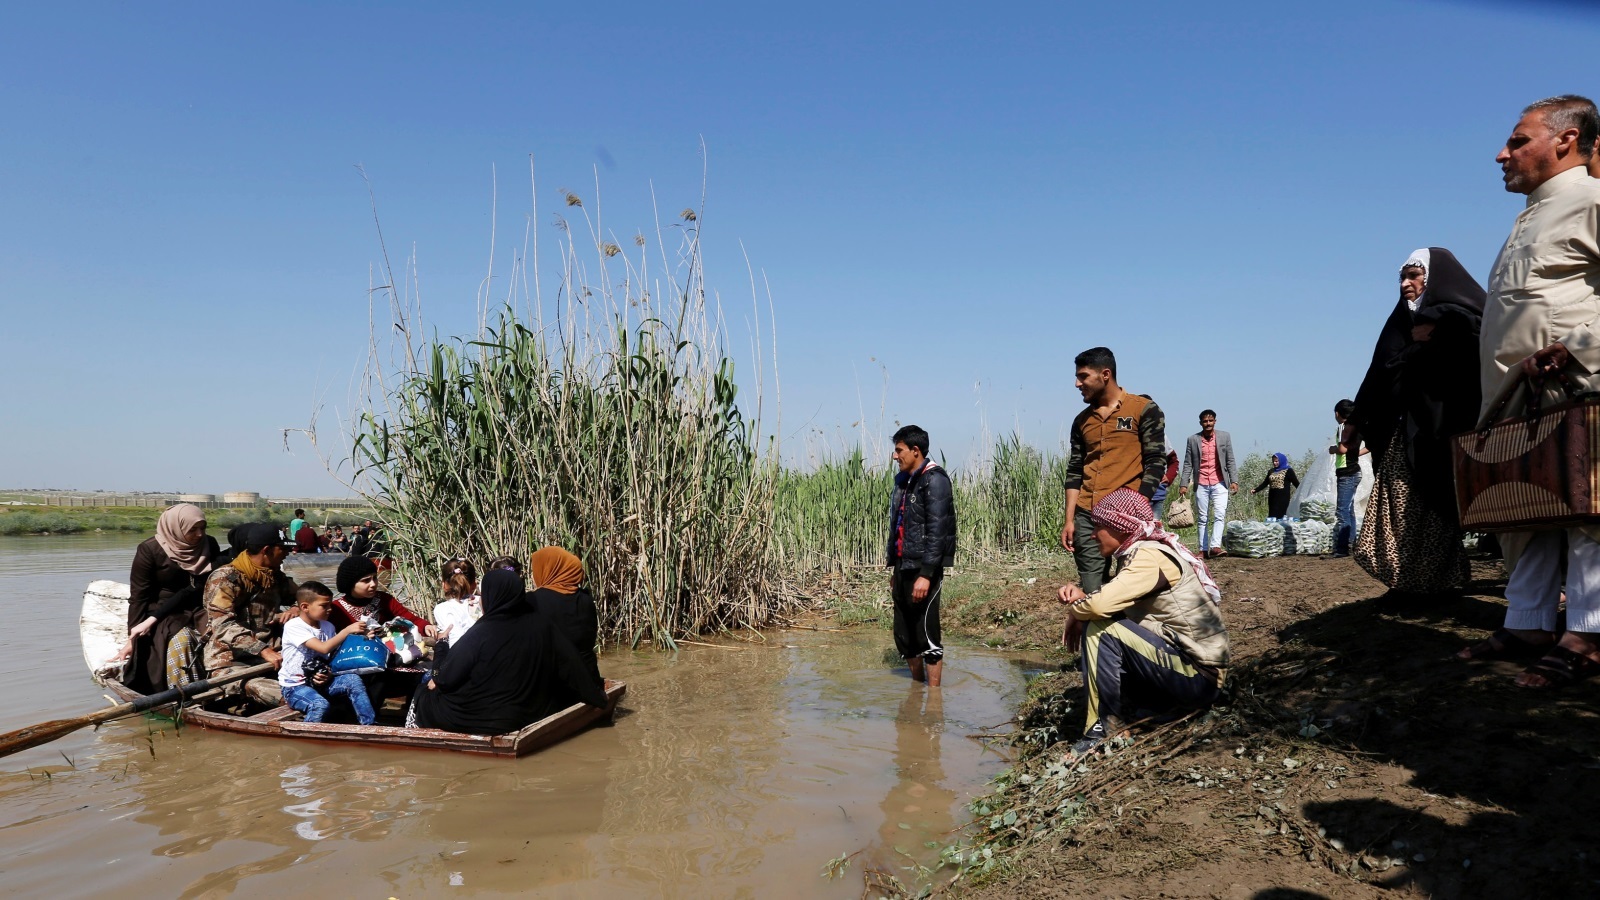 هروب عدد من المدنيين عبر نهر دجلة من القتال الدائر بين القوات العراقية وتنظيم الدولة في الشطر الغربي من الموصل (رويترز)